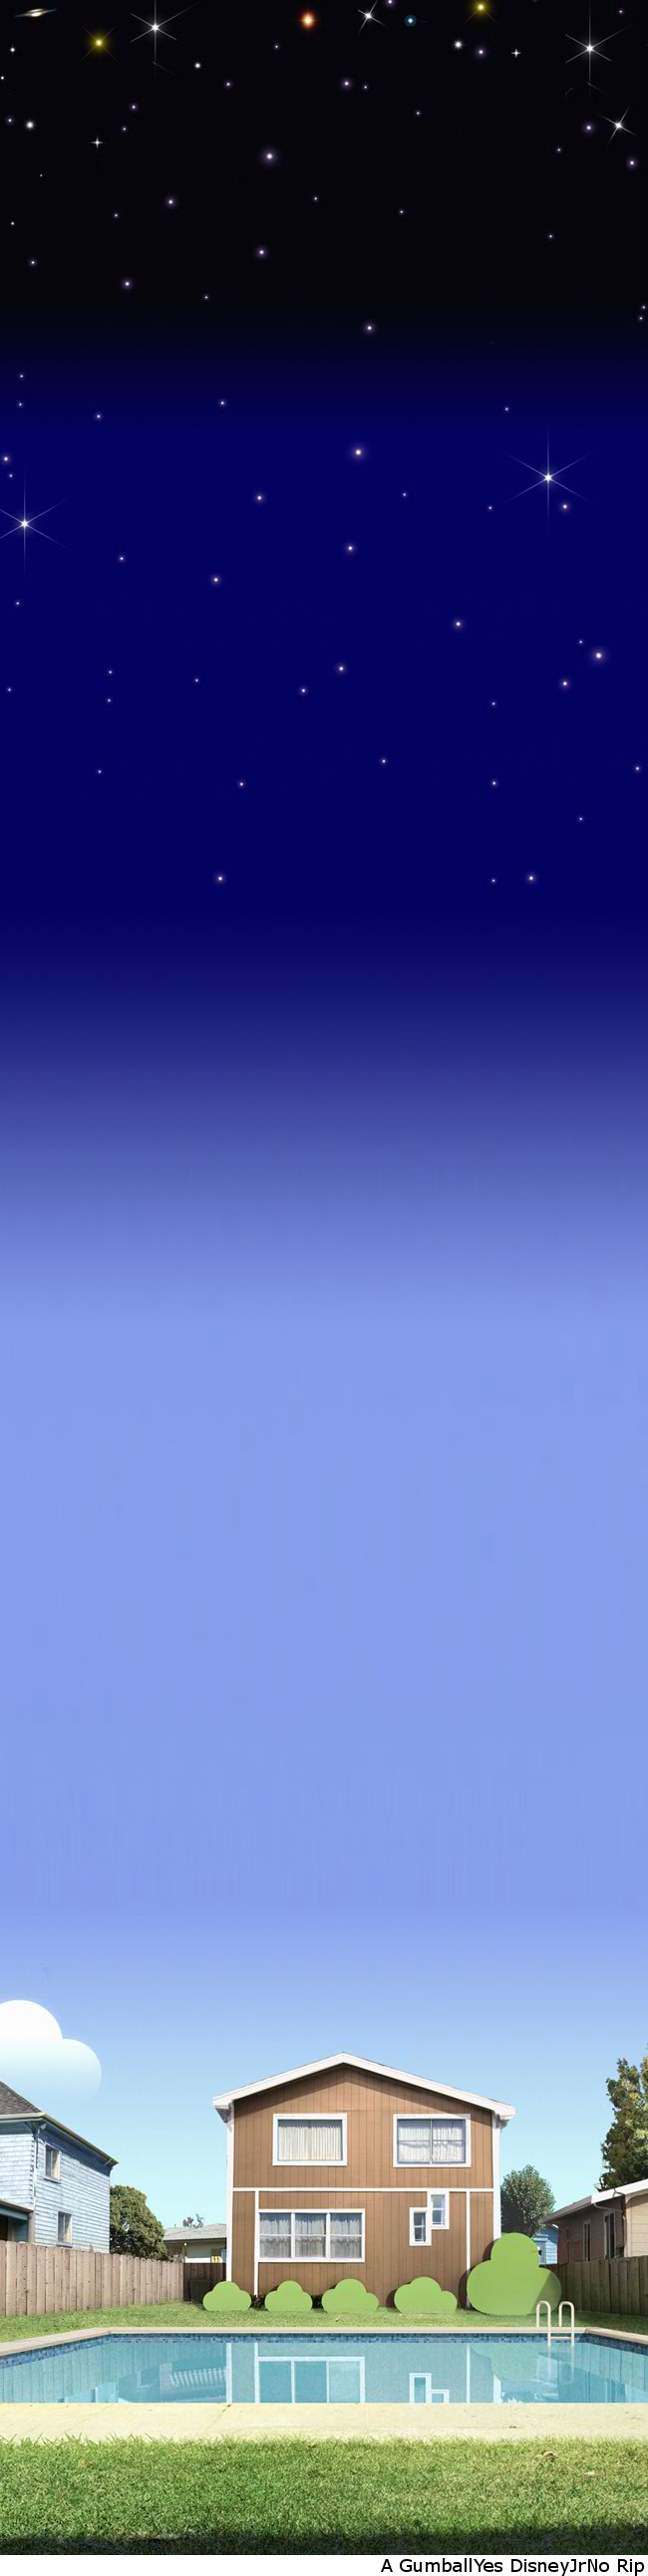 The Amazing World of Gumball: Splash Master - Background